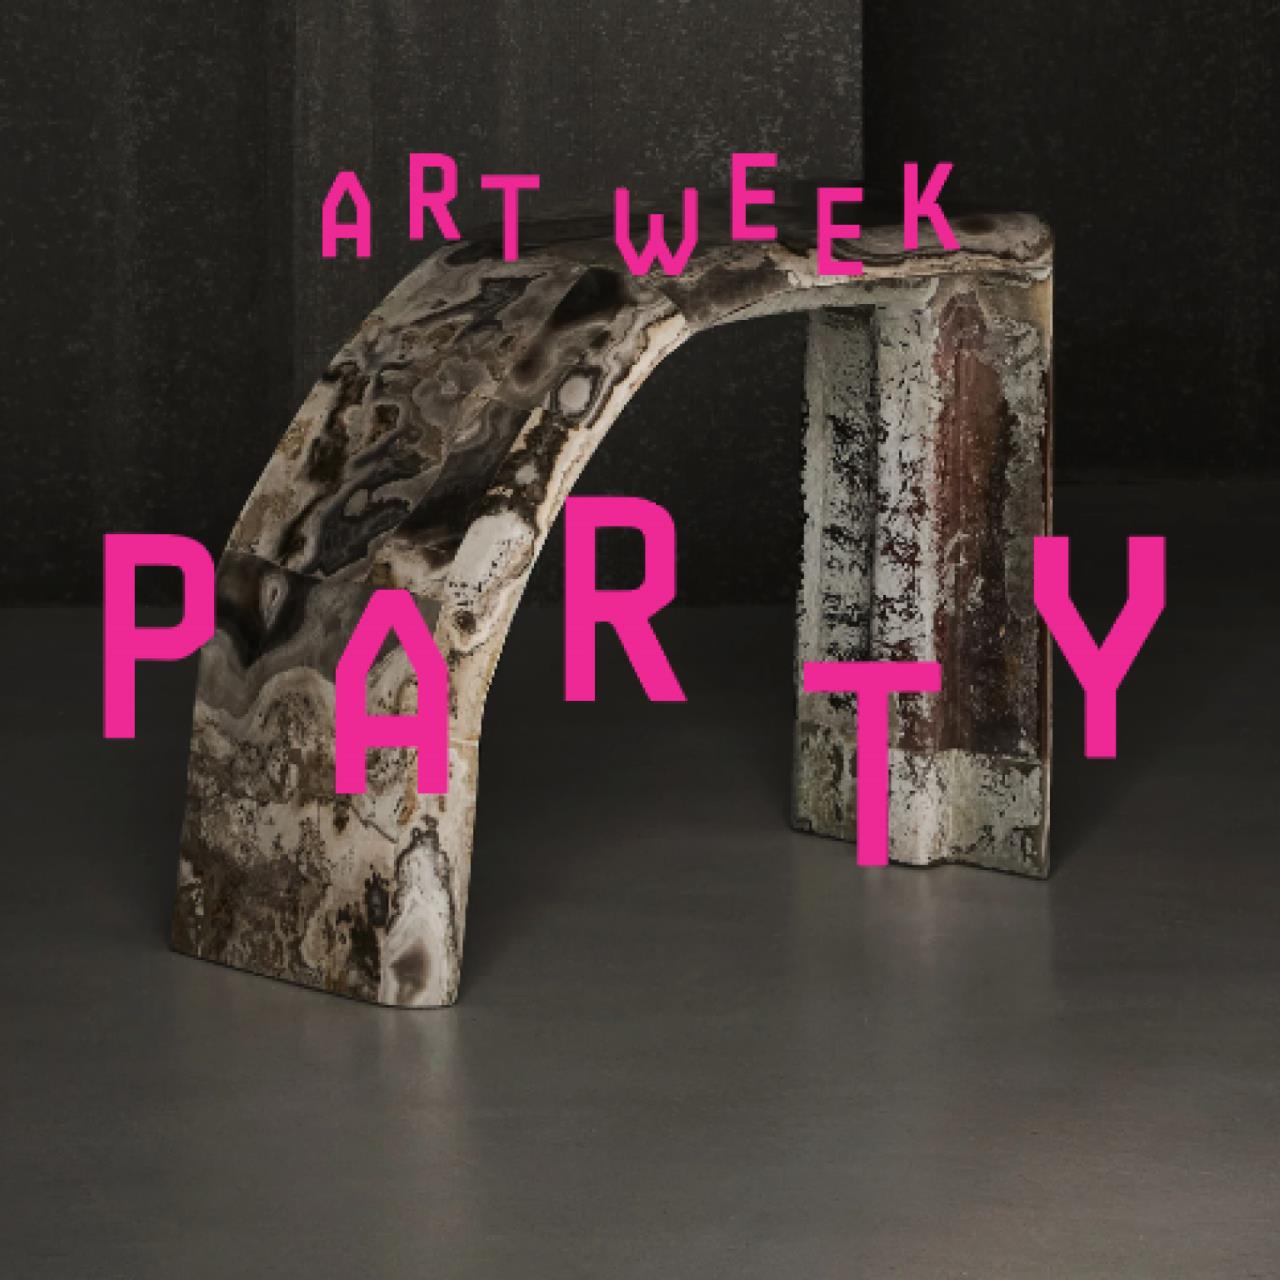 Art Week Party